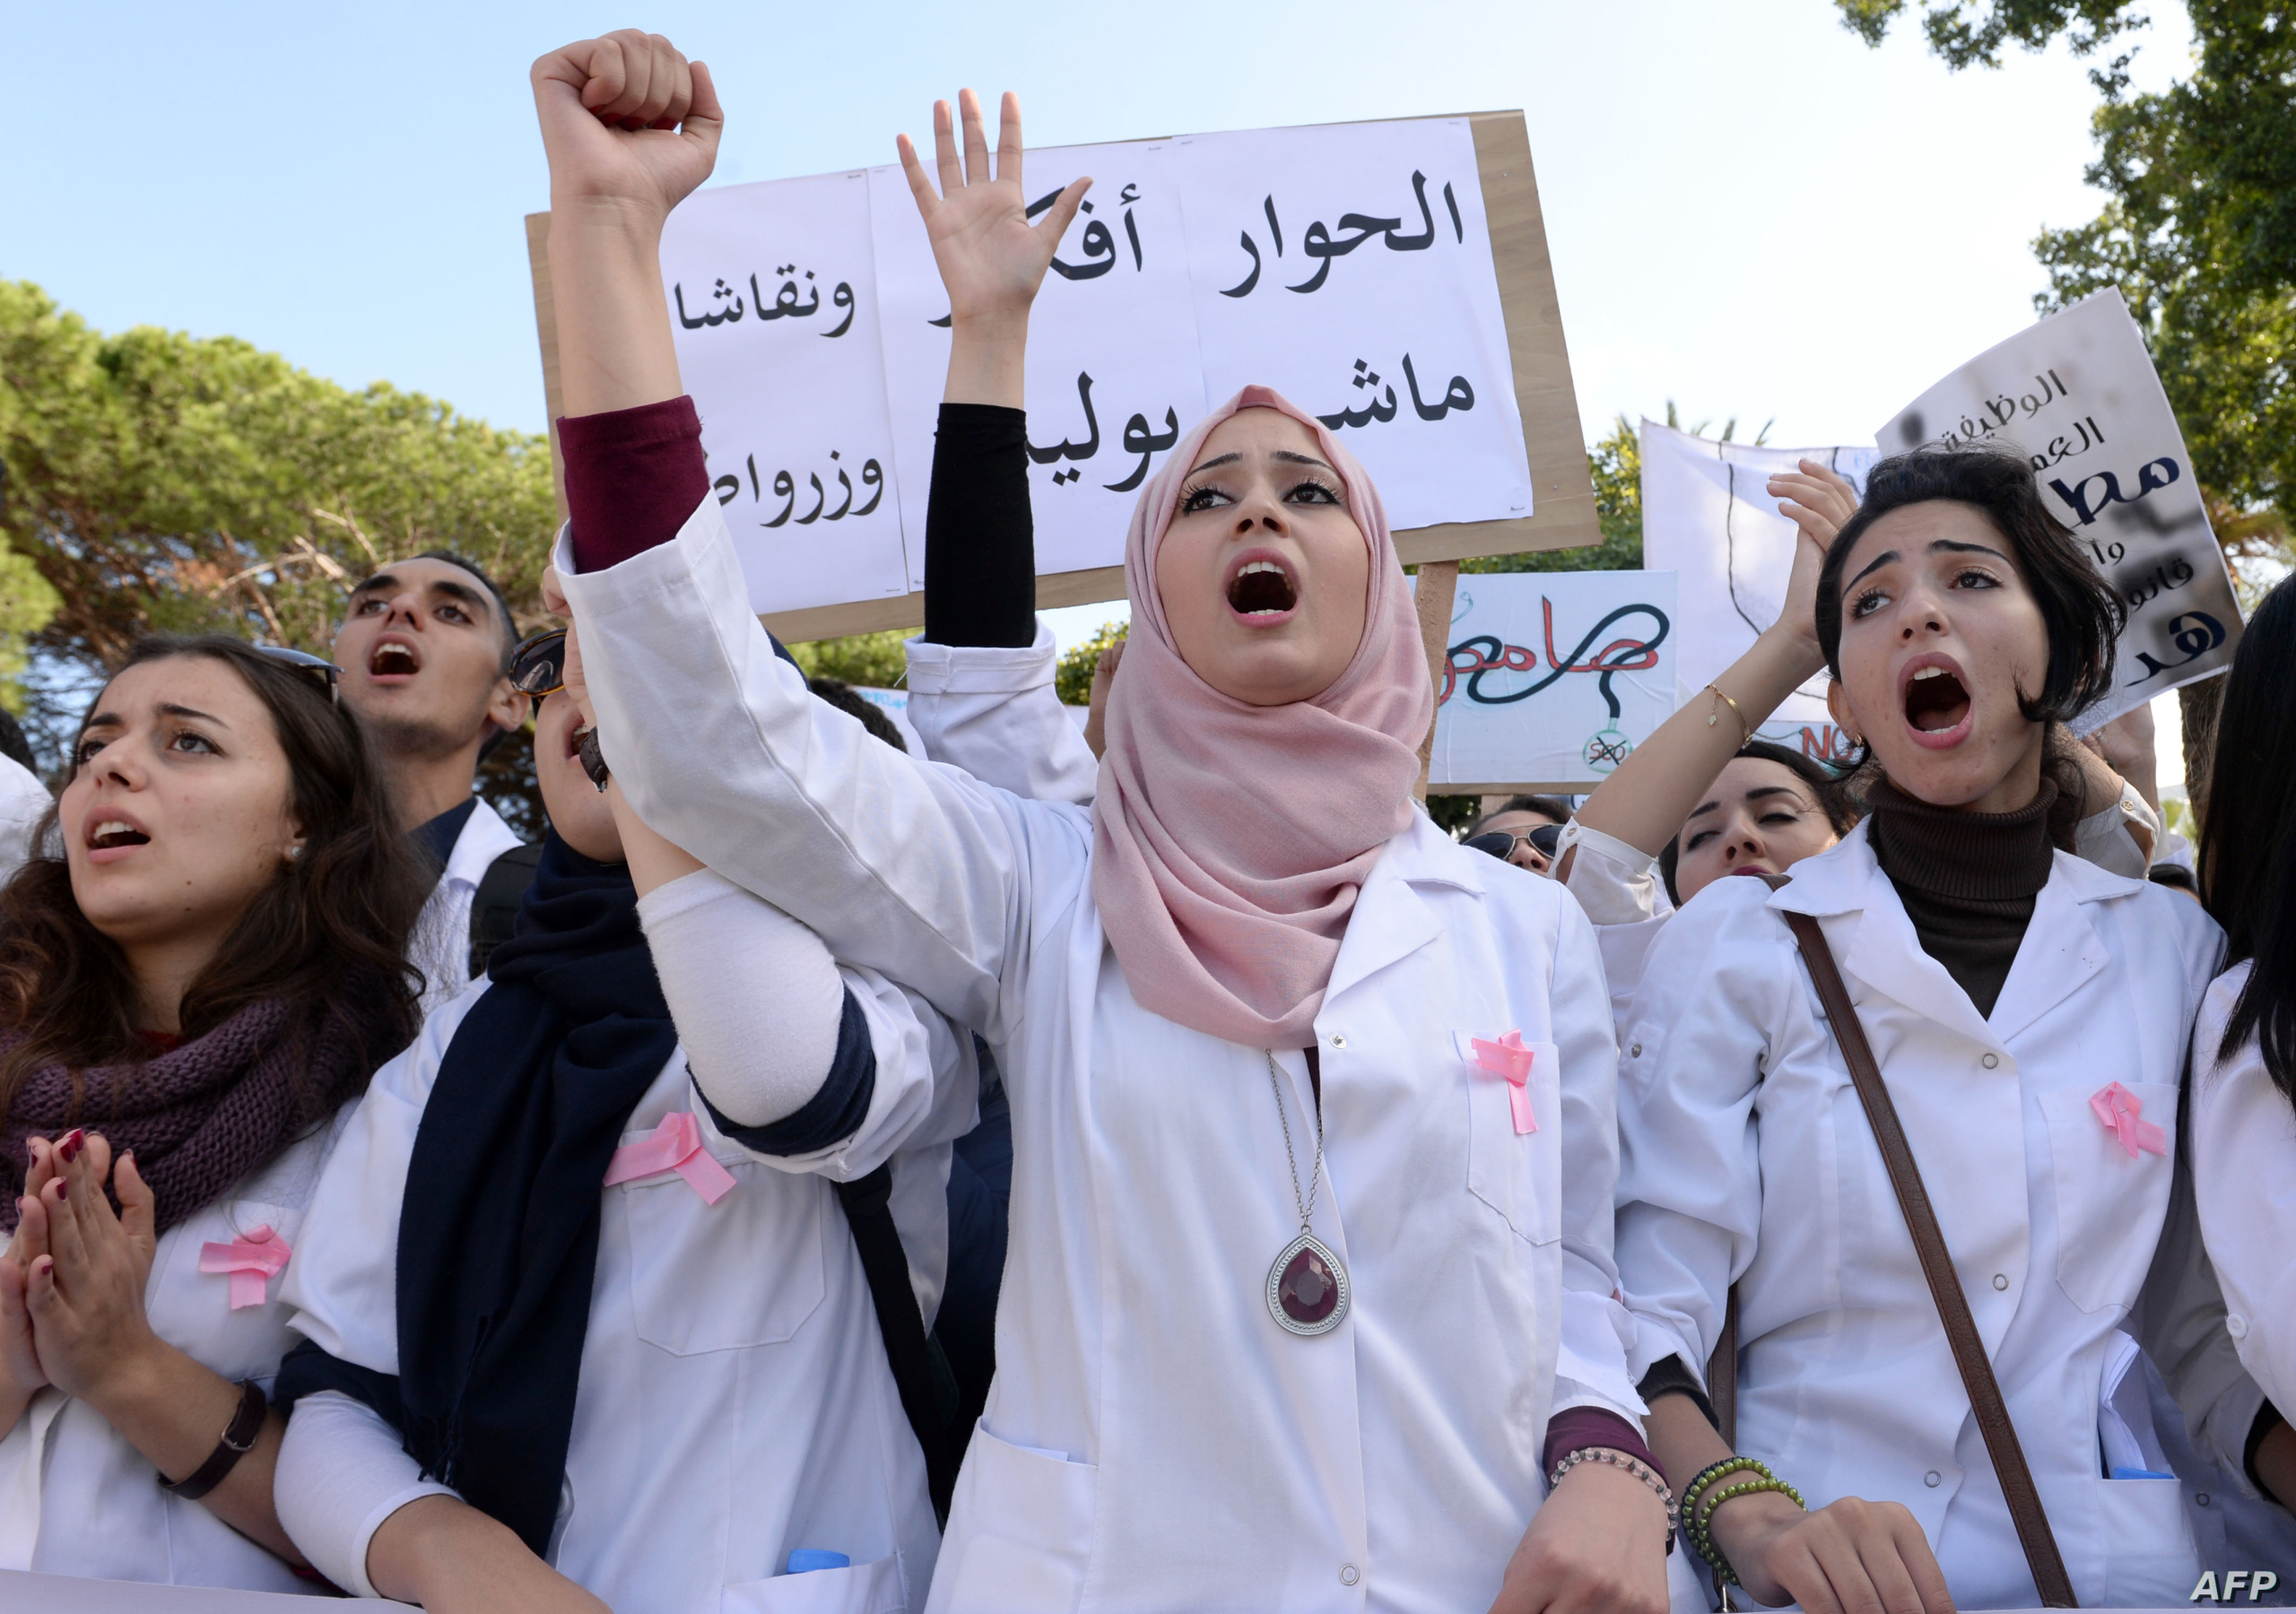 لطفي: معدل الأطباء والممرضين بالمغرب من الأضعف عالميا والحكومة مطالبة برفعه وتحسين وضعيتهم